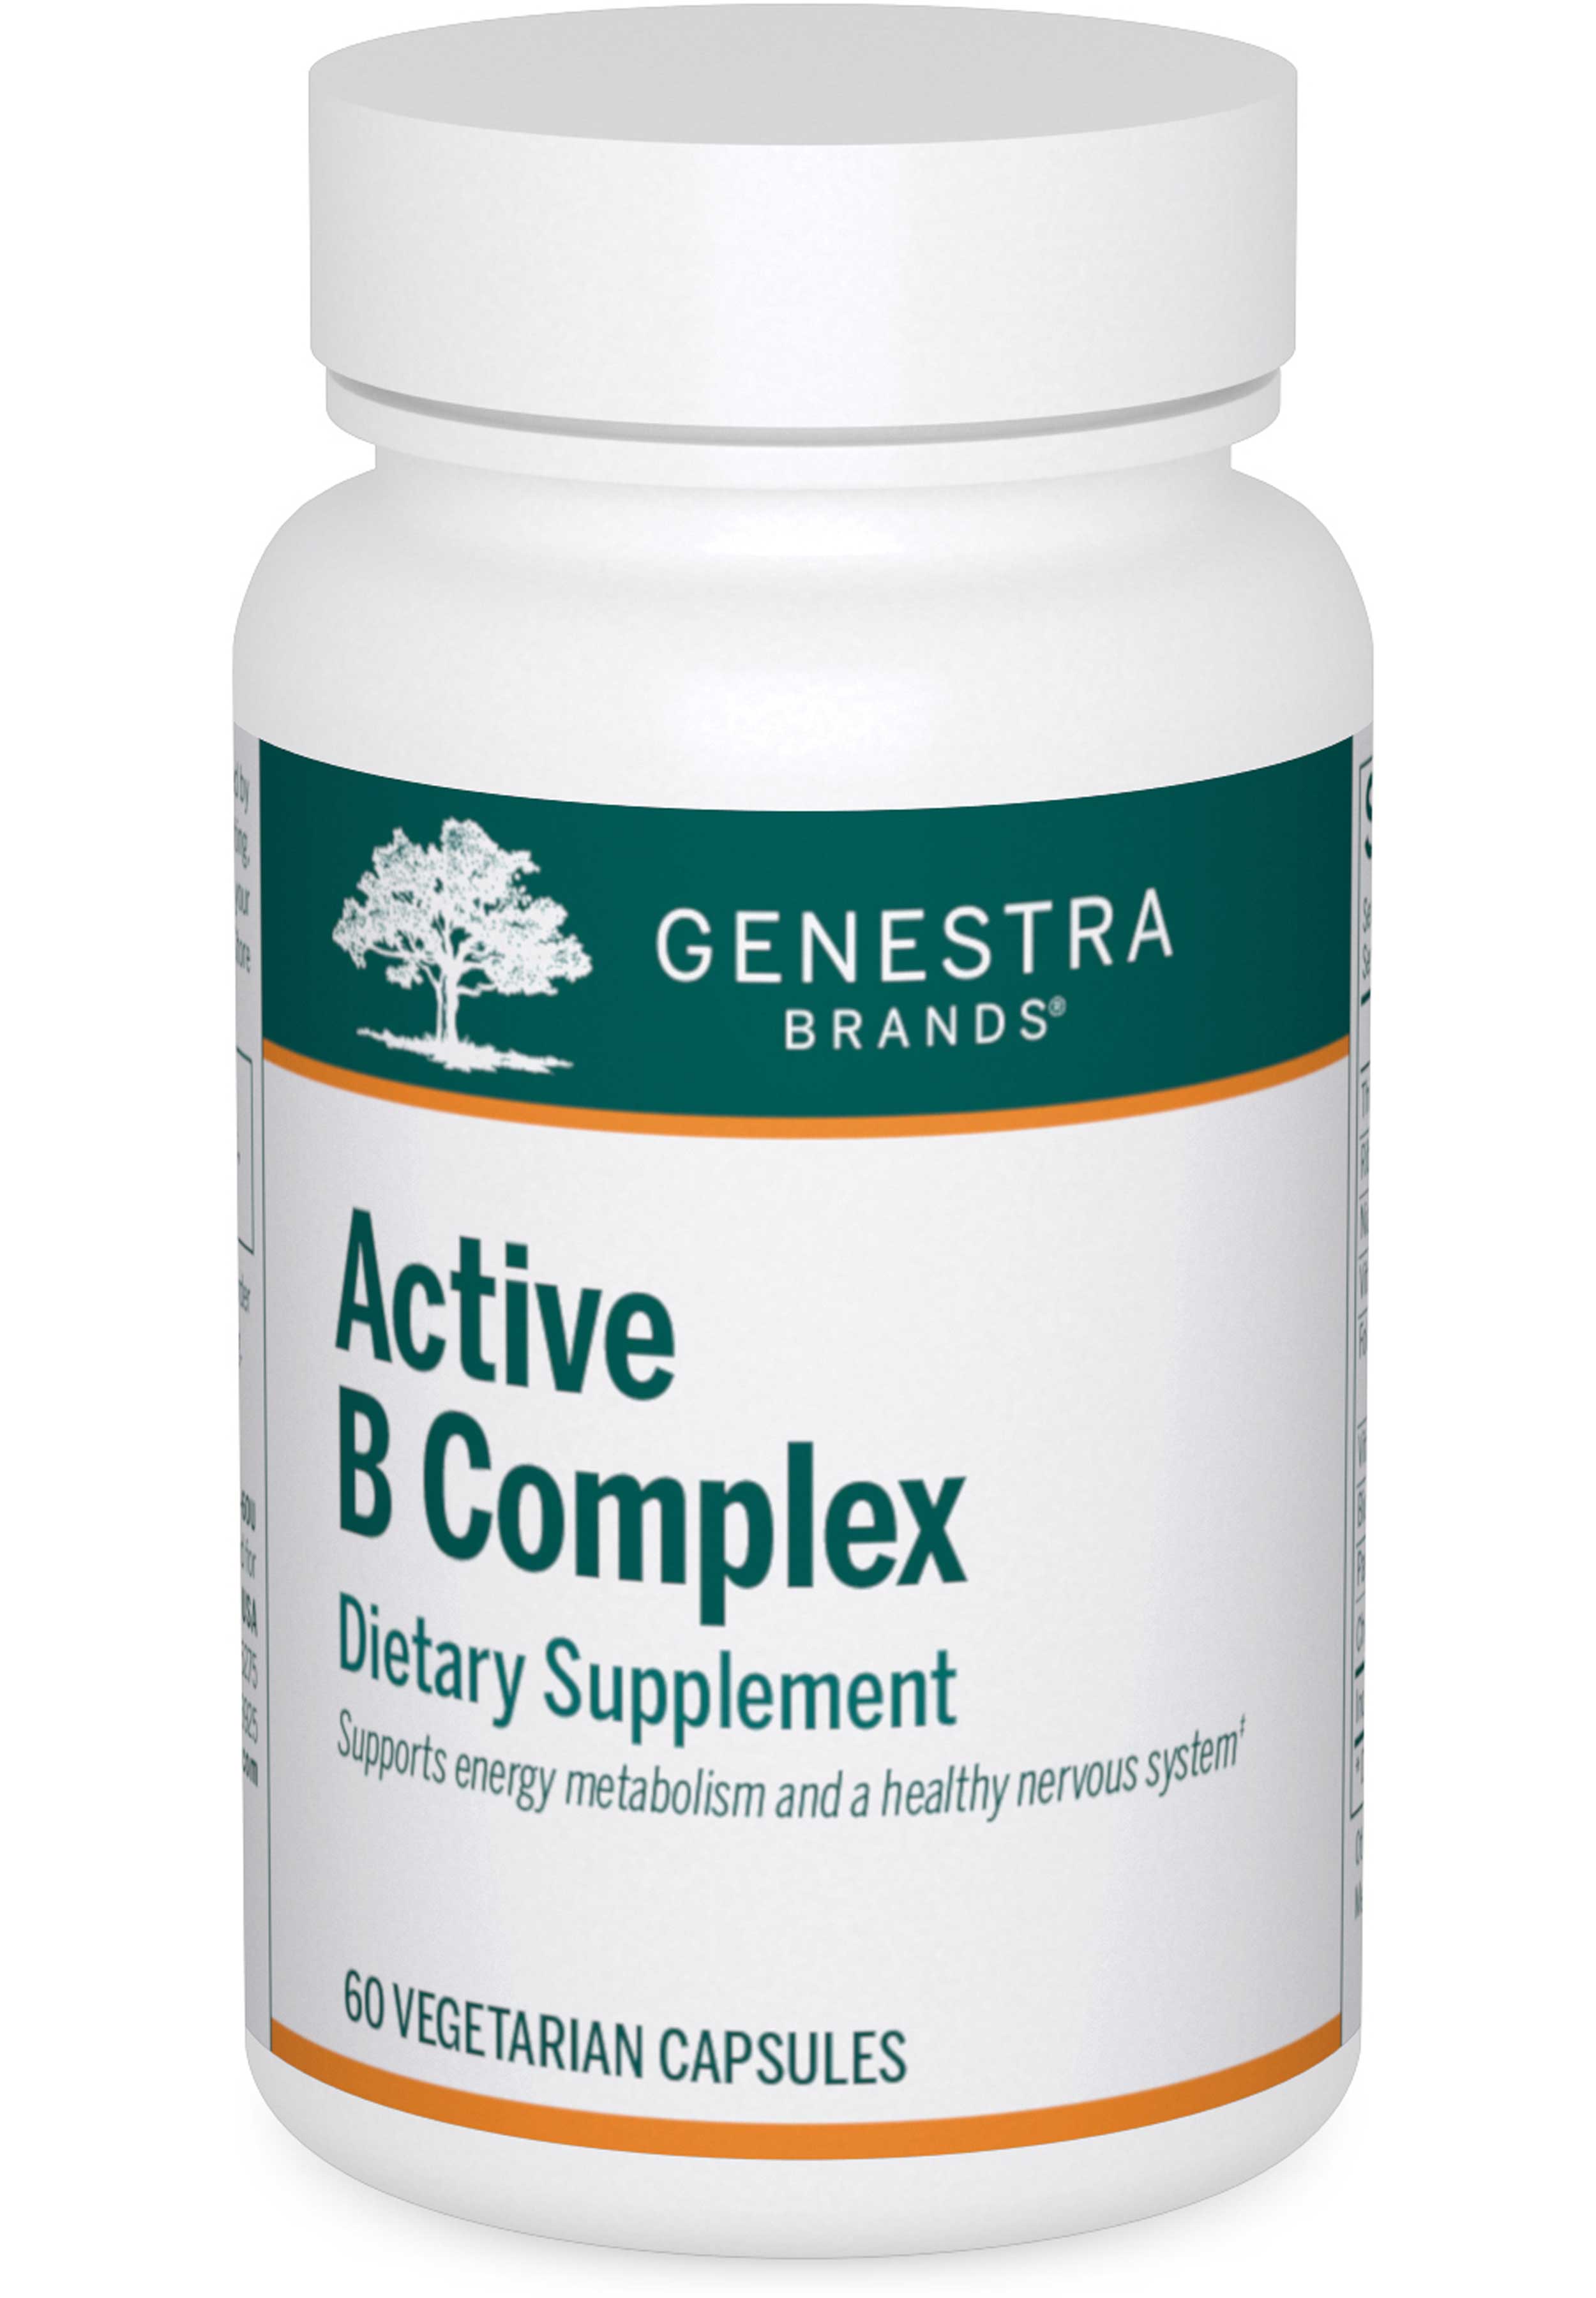 Genestra Brands Active B Complex